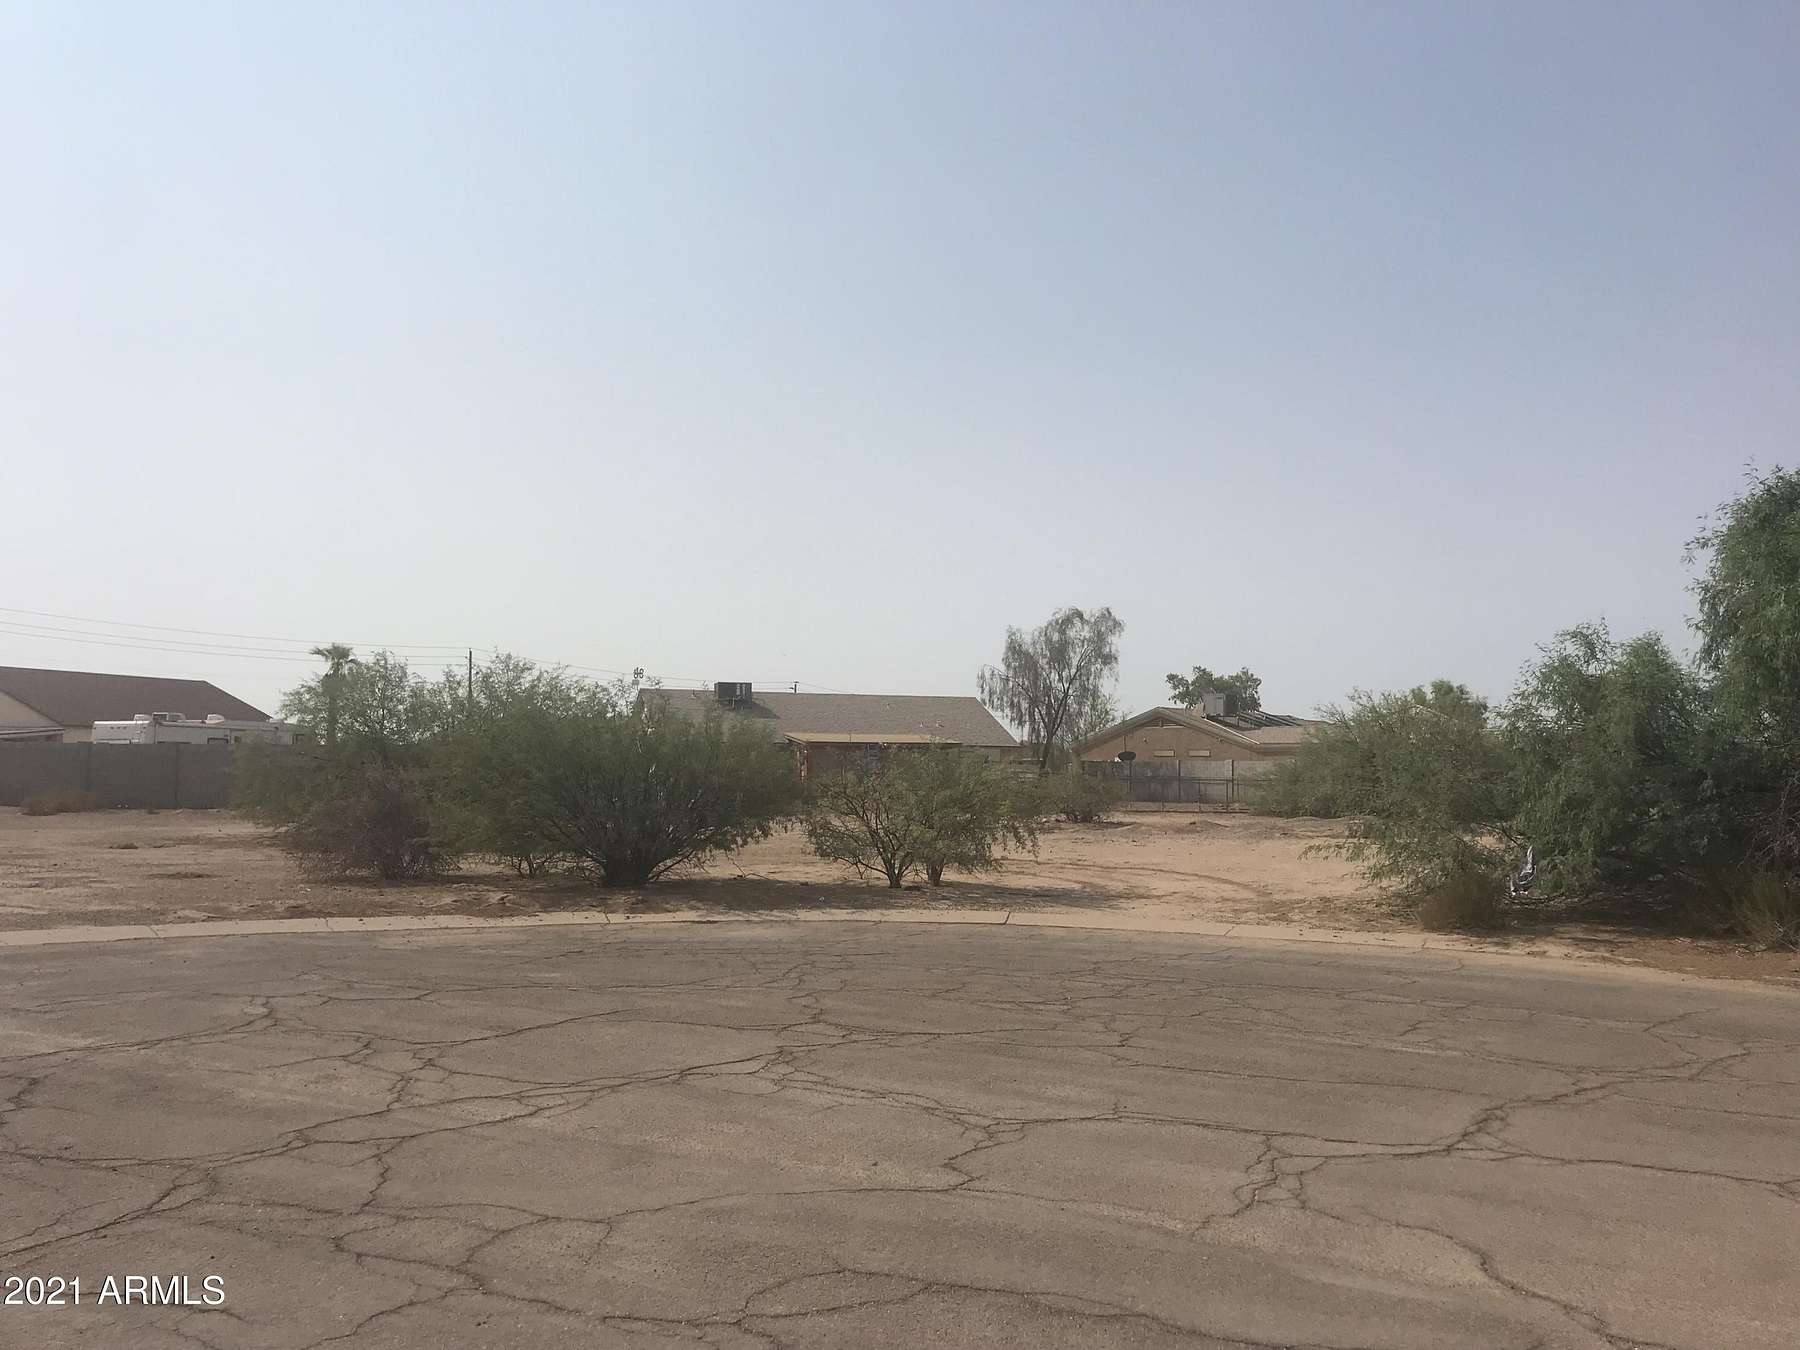 0.29 Acres of Land for Sale in Arizona City, Arizona